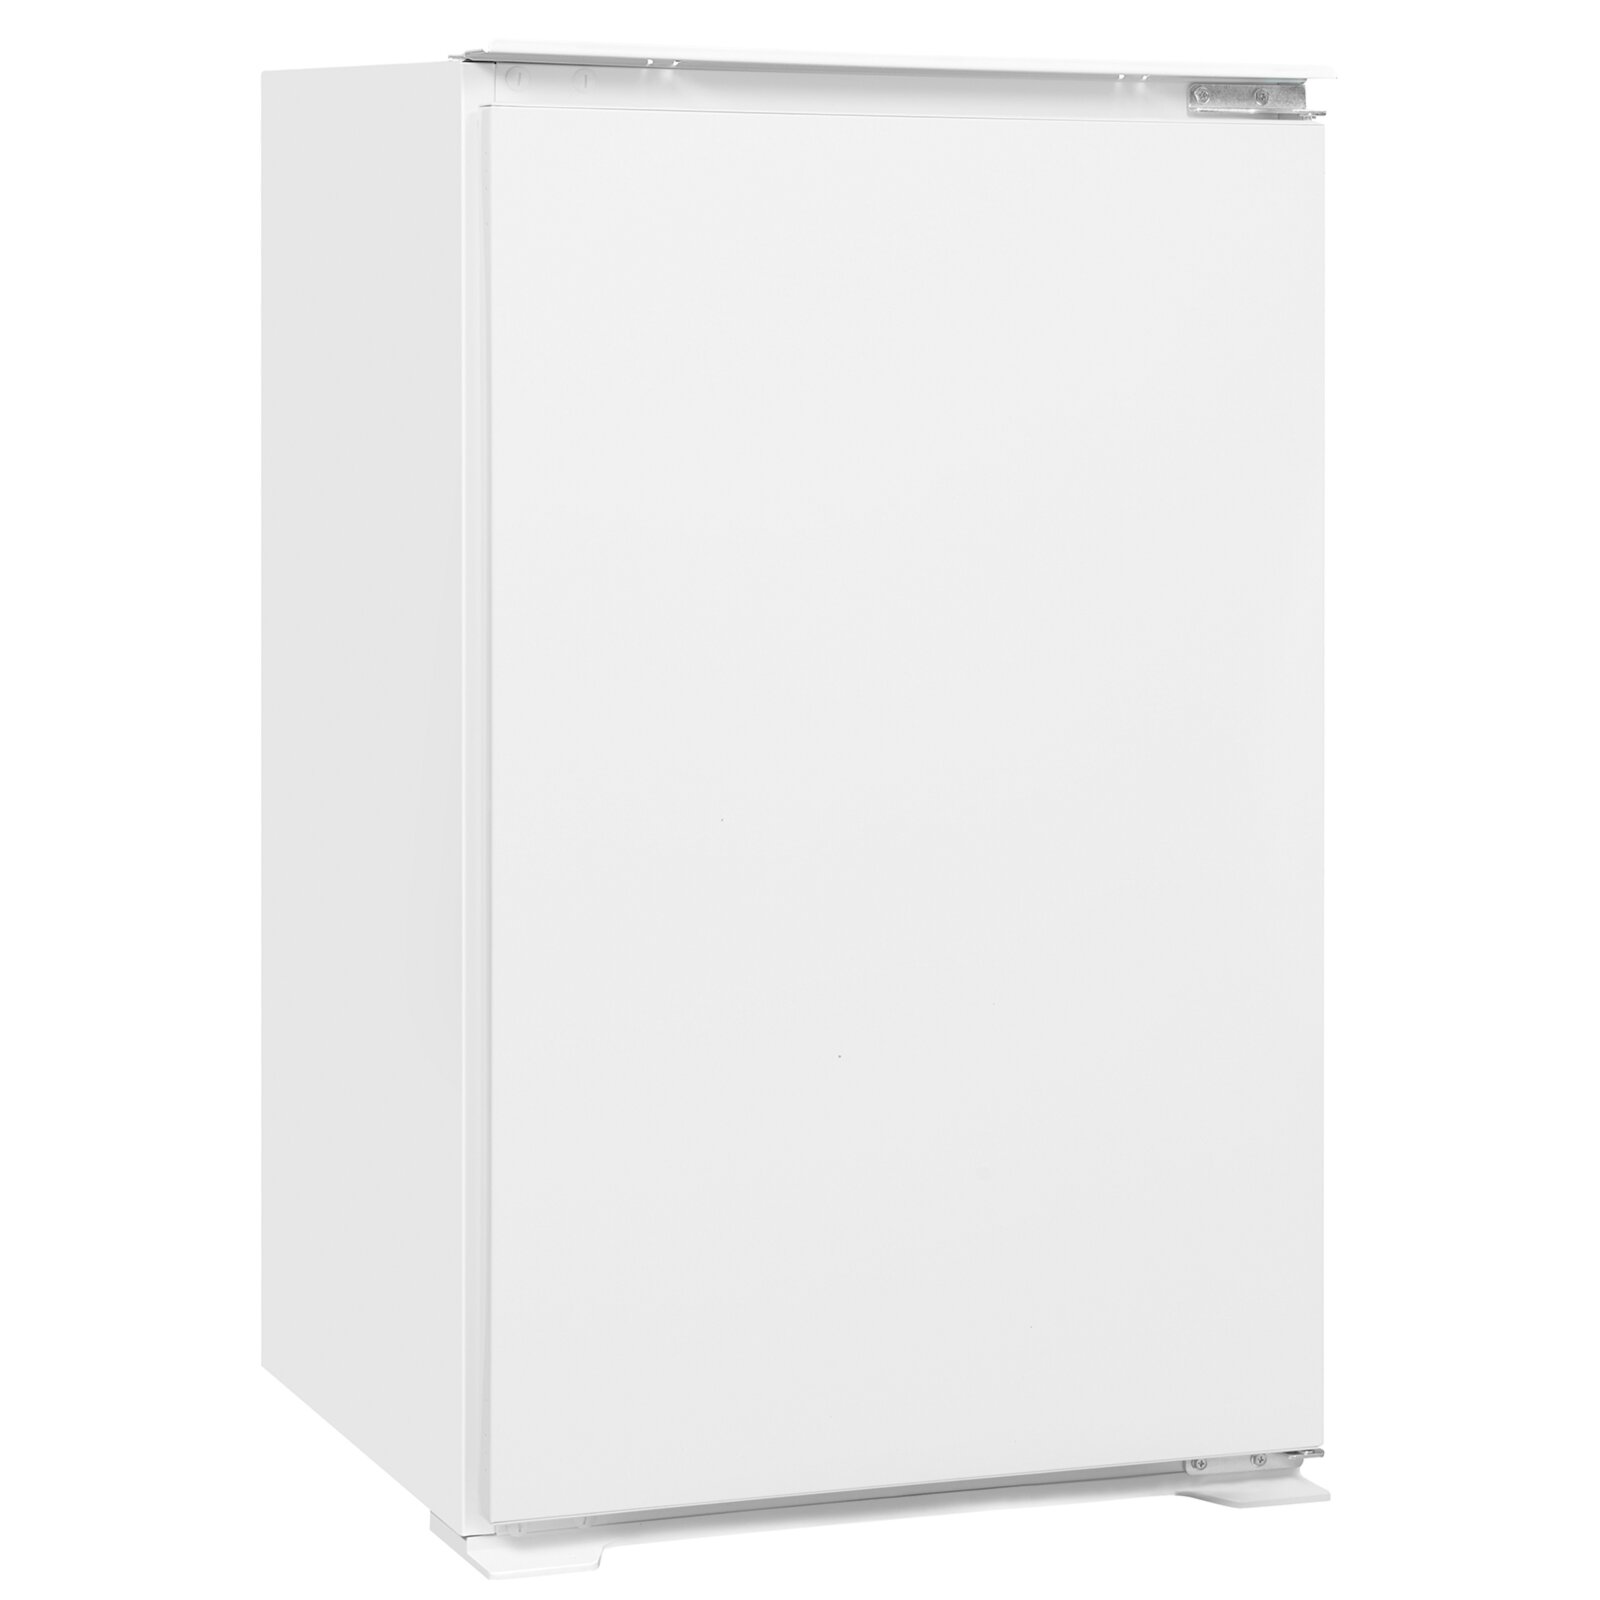 EXQUISIT Einbau-Kühlschrank EKS ROLLER | Online kaufen bei F - 130-V-040